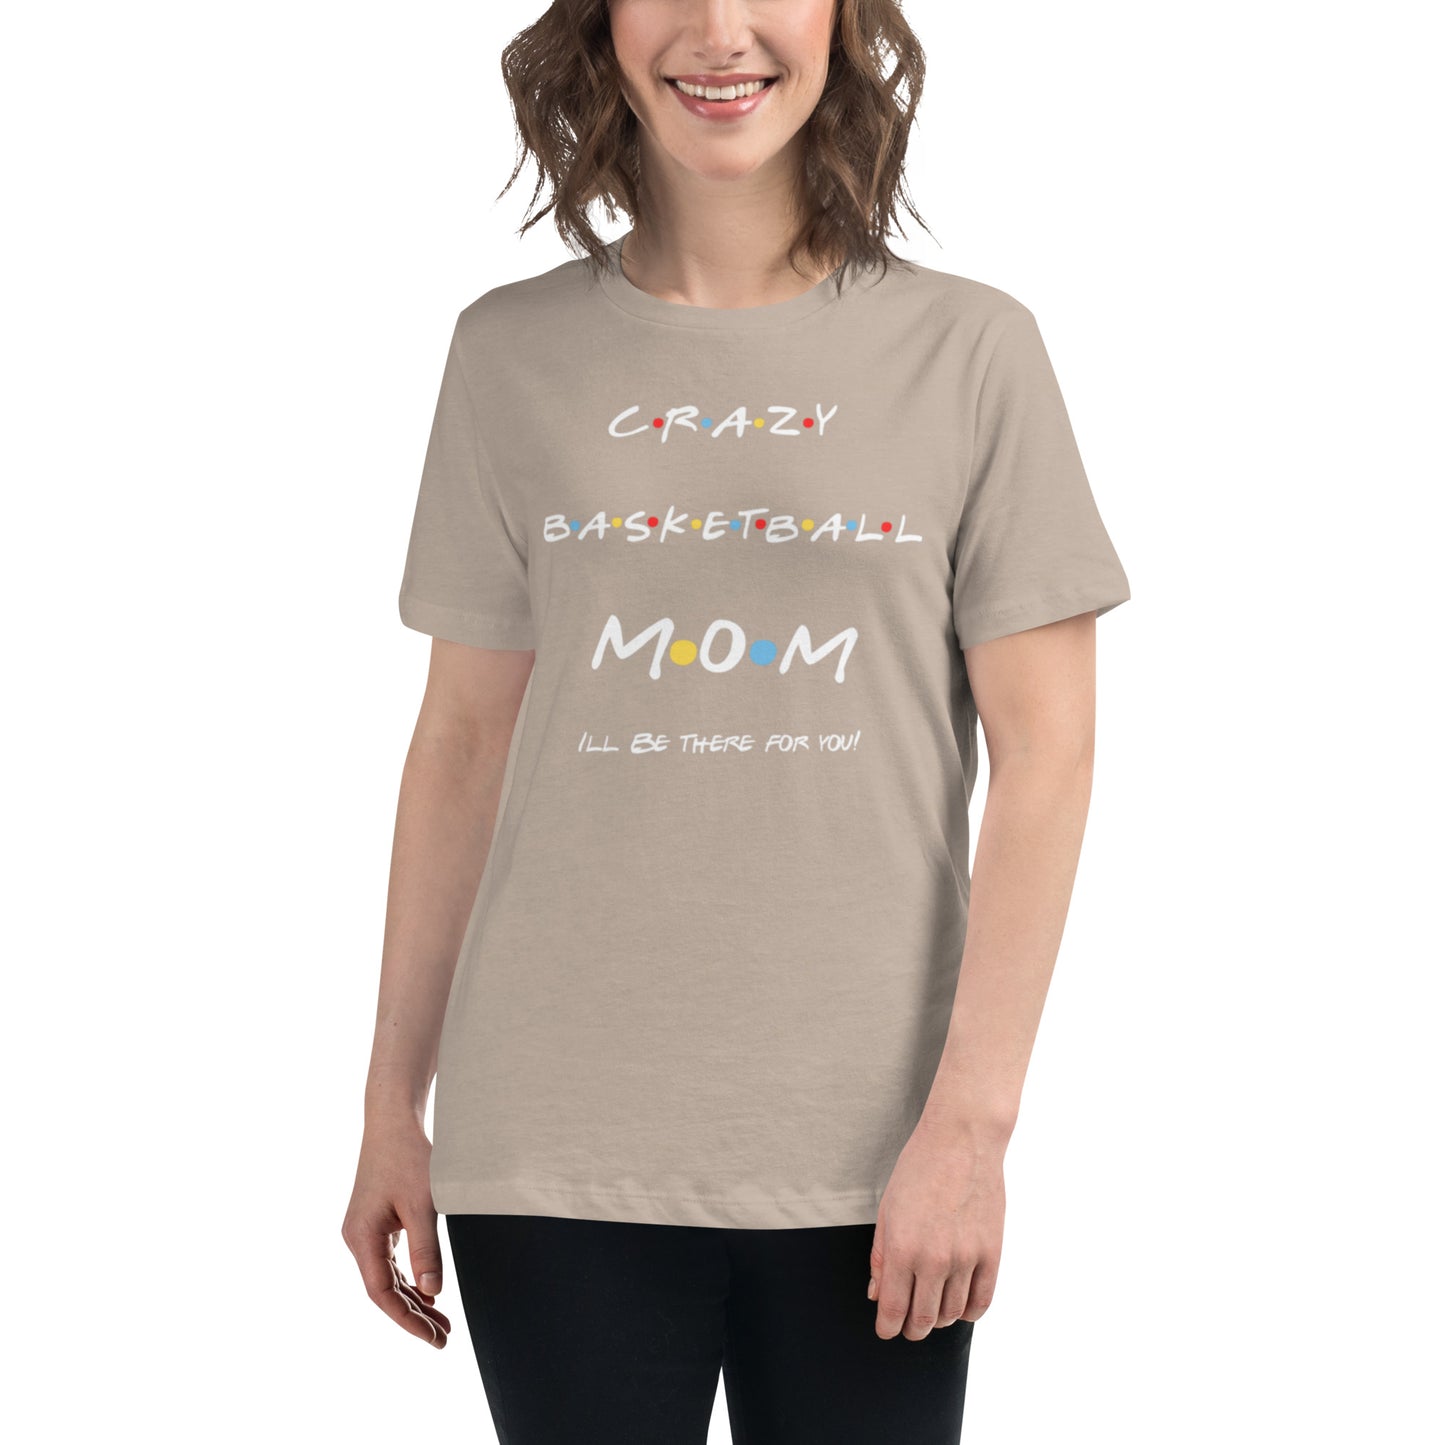 Mom's Friends Basketball Shirt